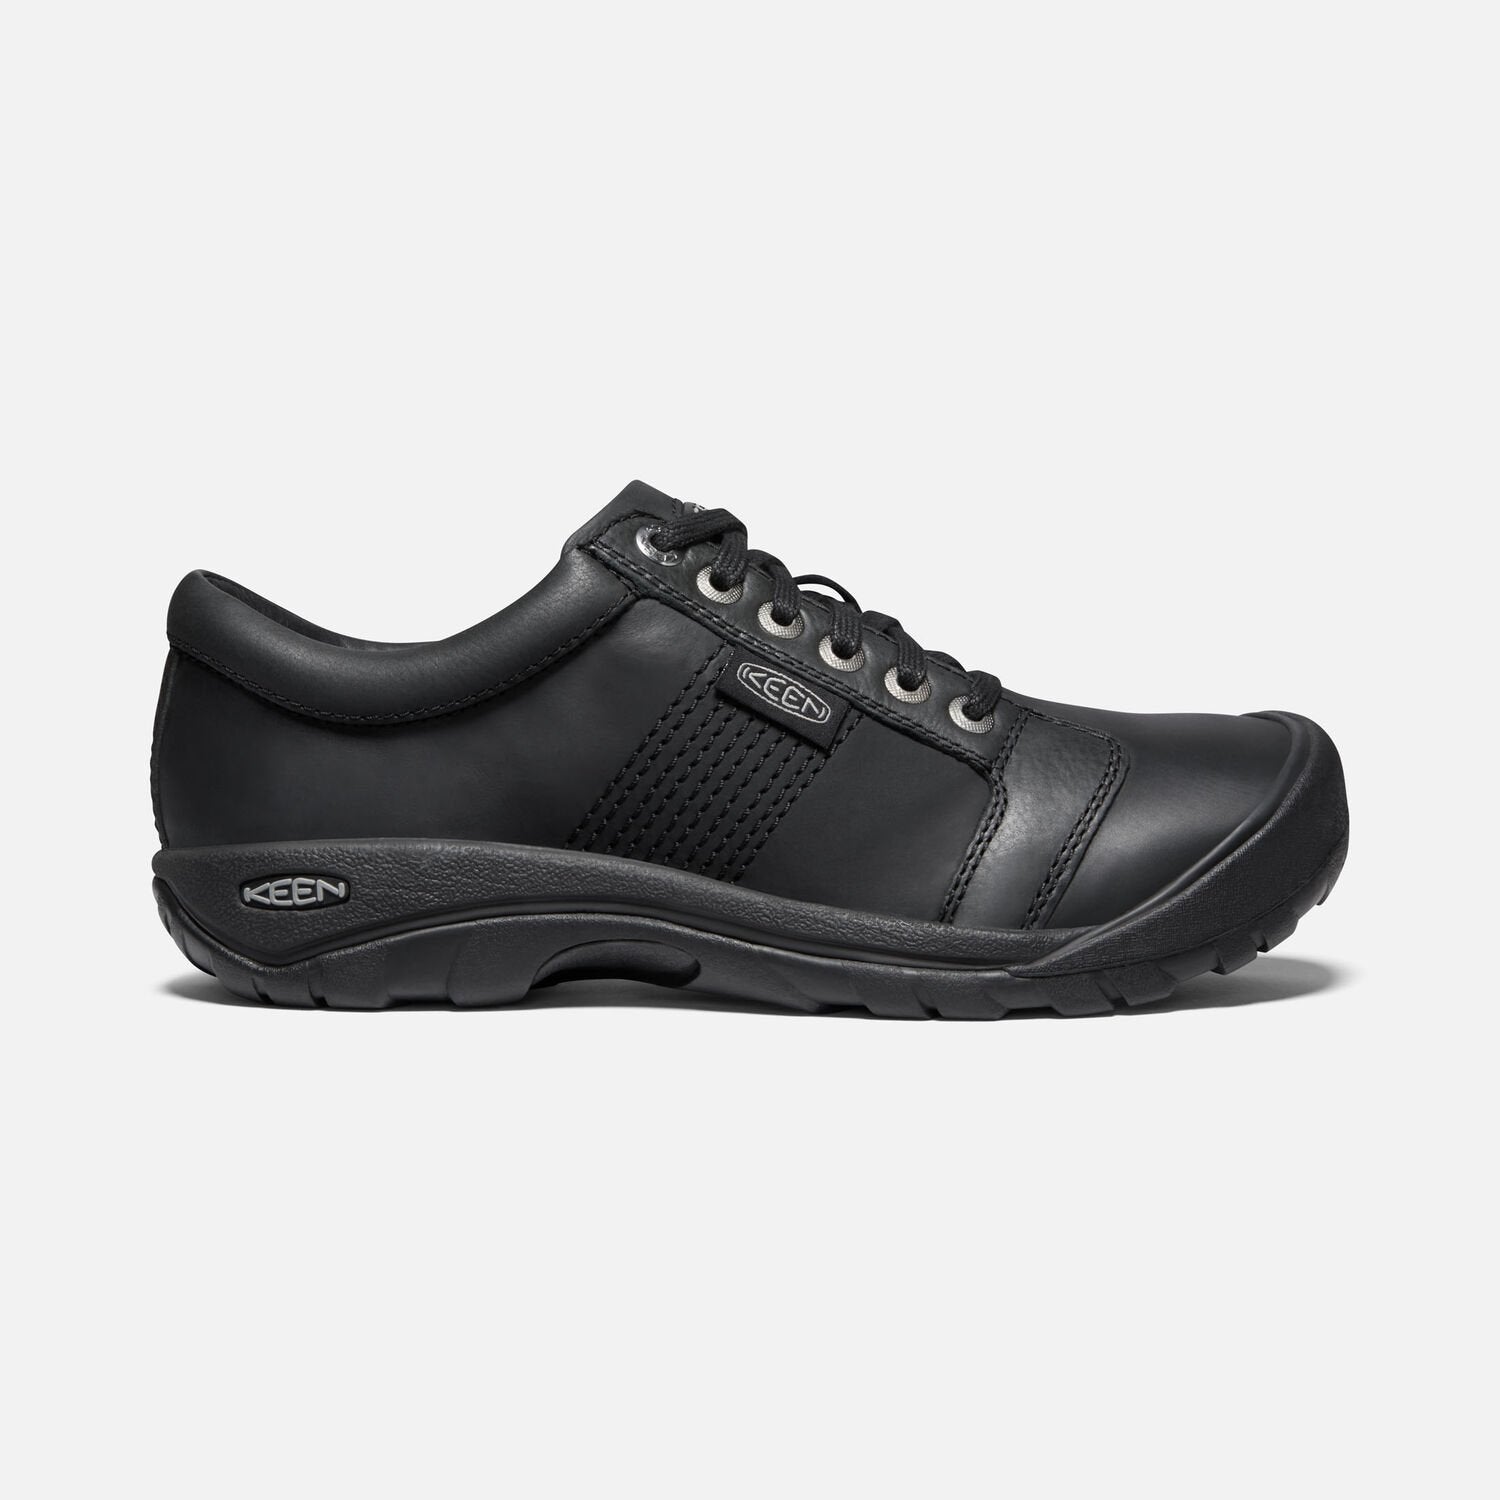 Keen Men's Austin Casual Shoes Black